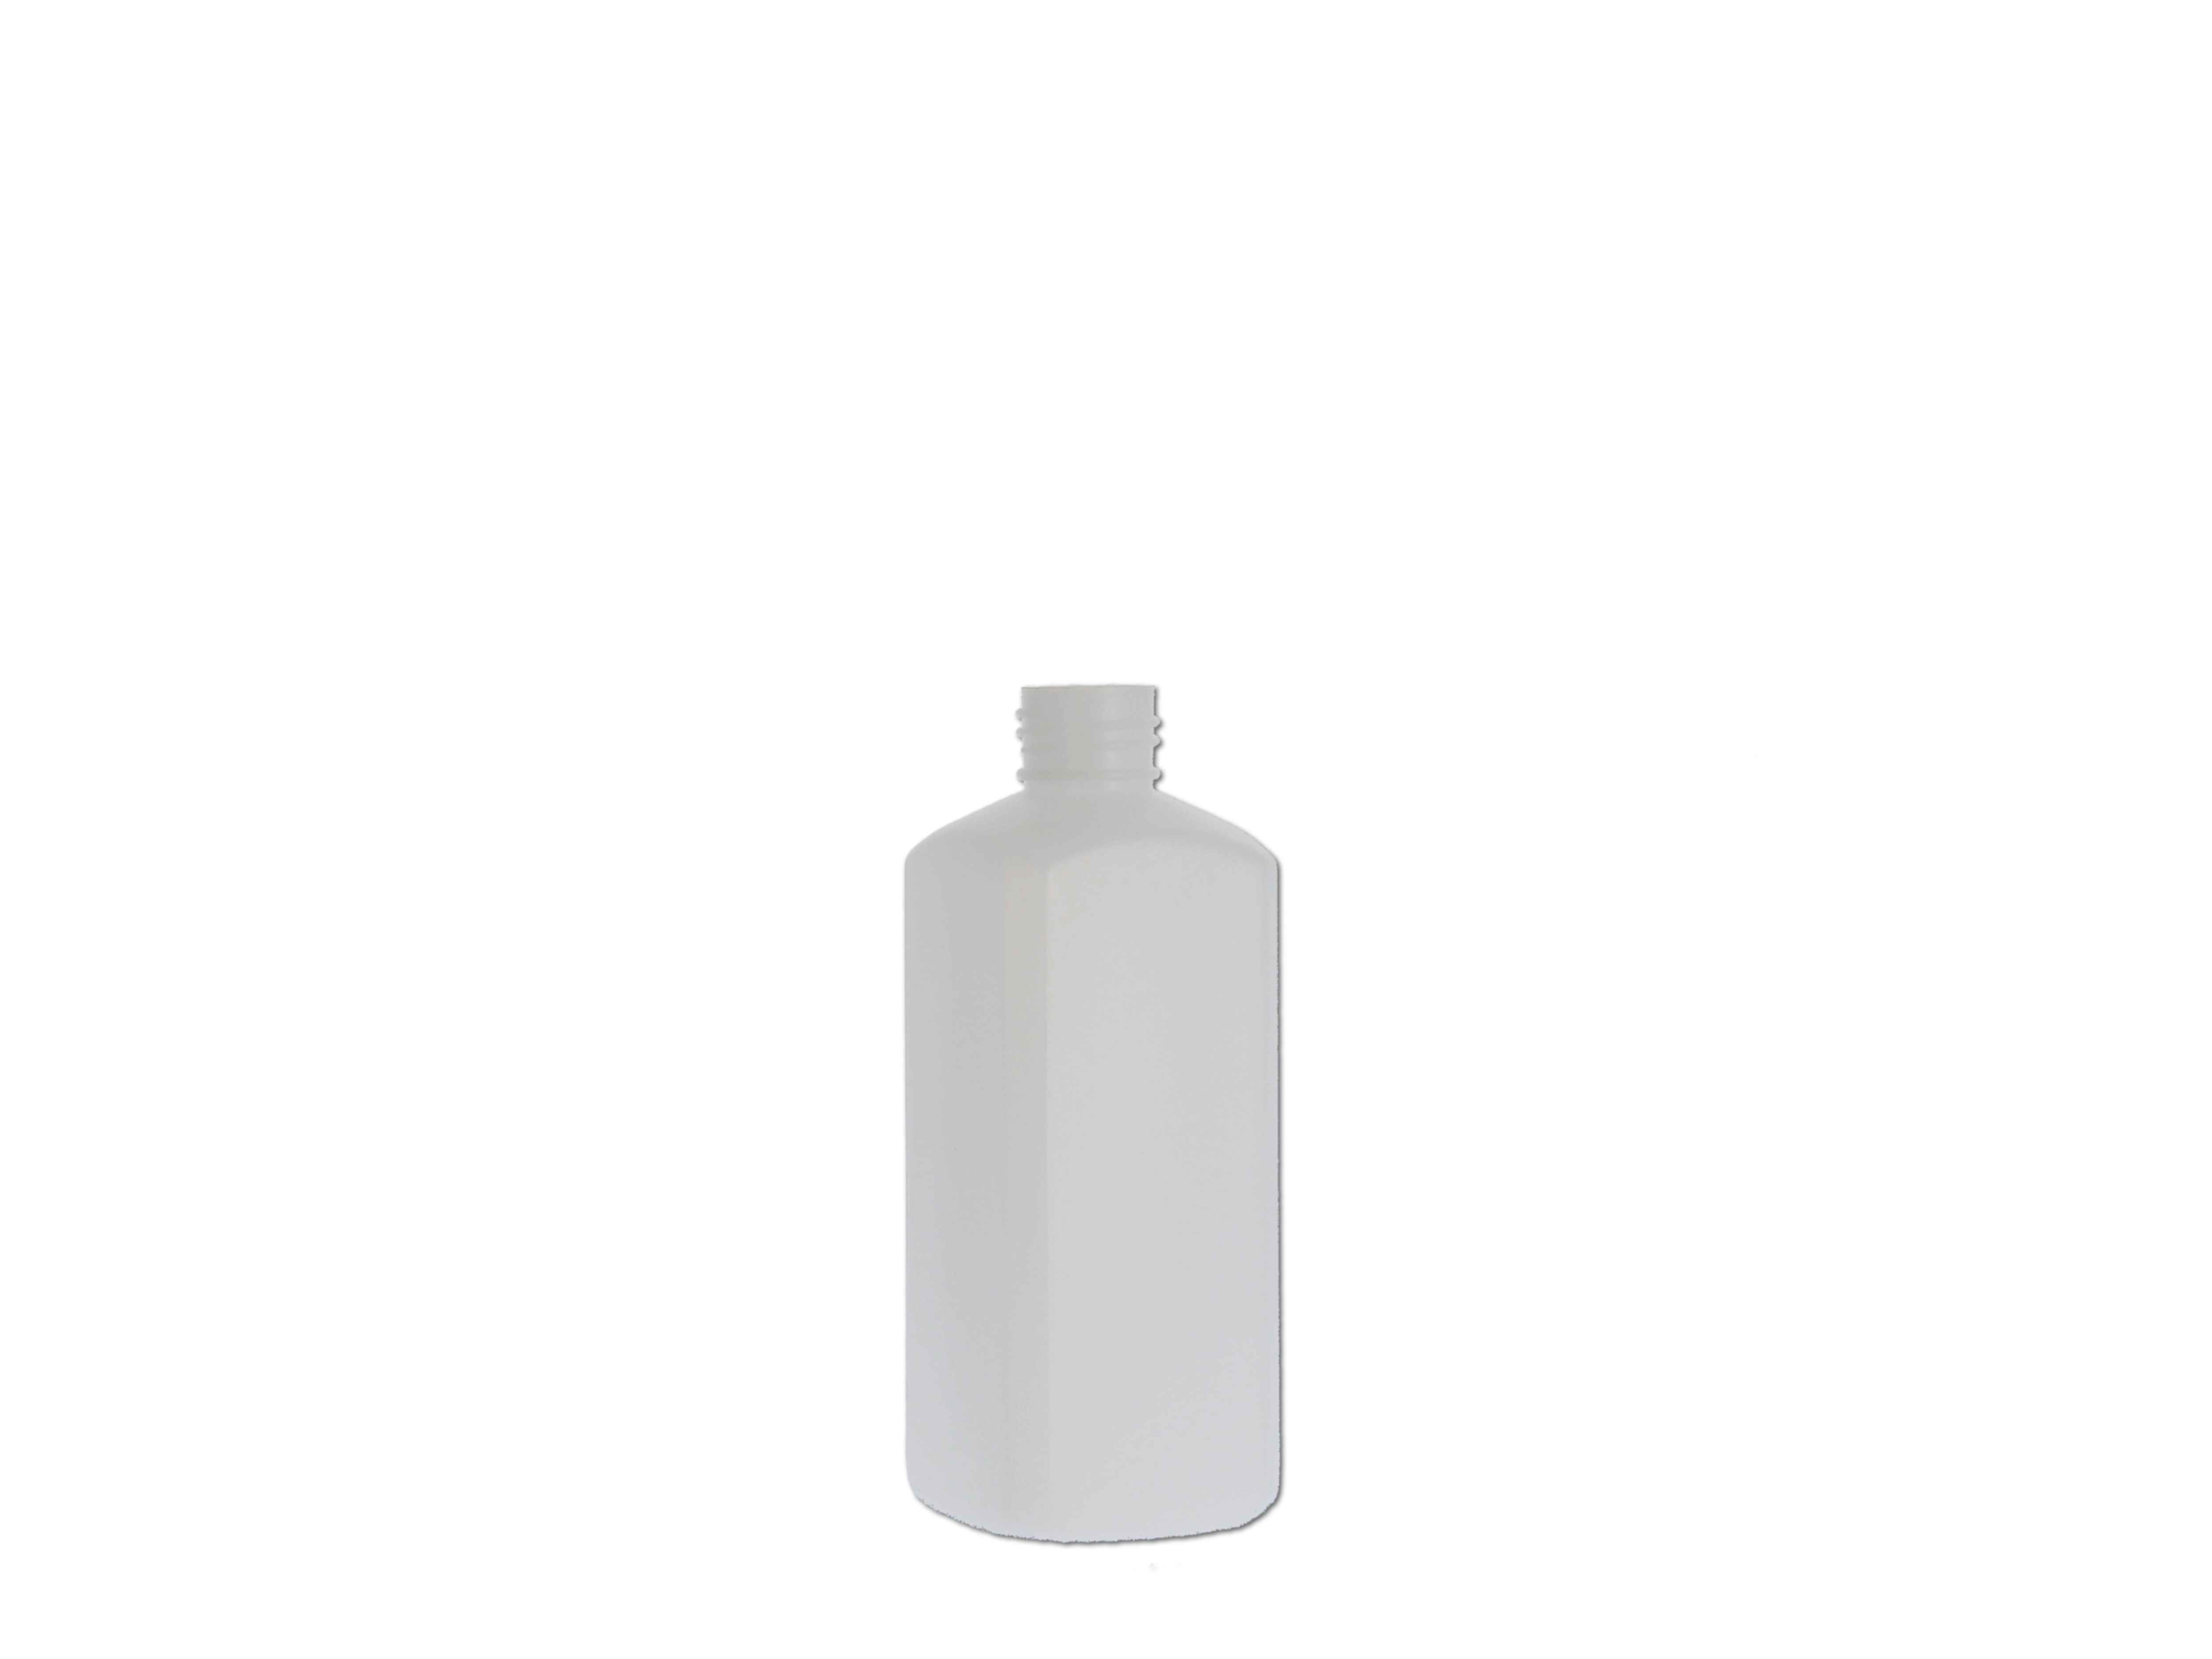    Kunststoff-Flasche 4Kant, ohne Verschluss - 250ml